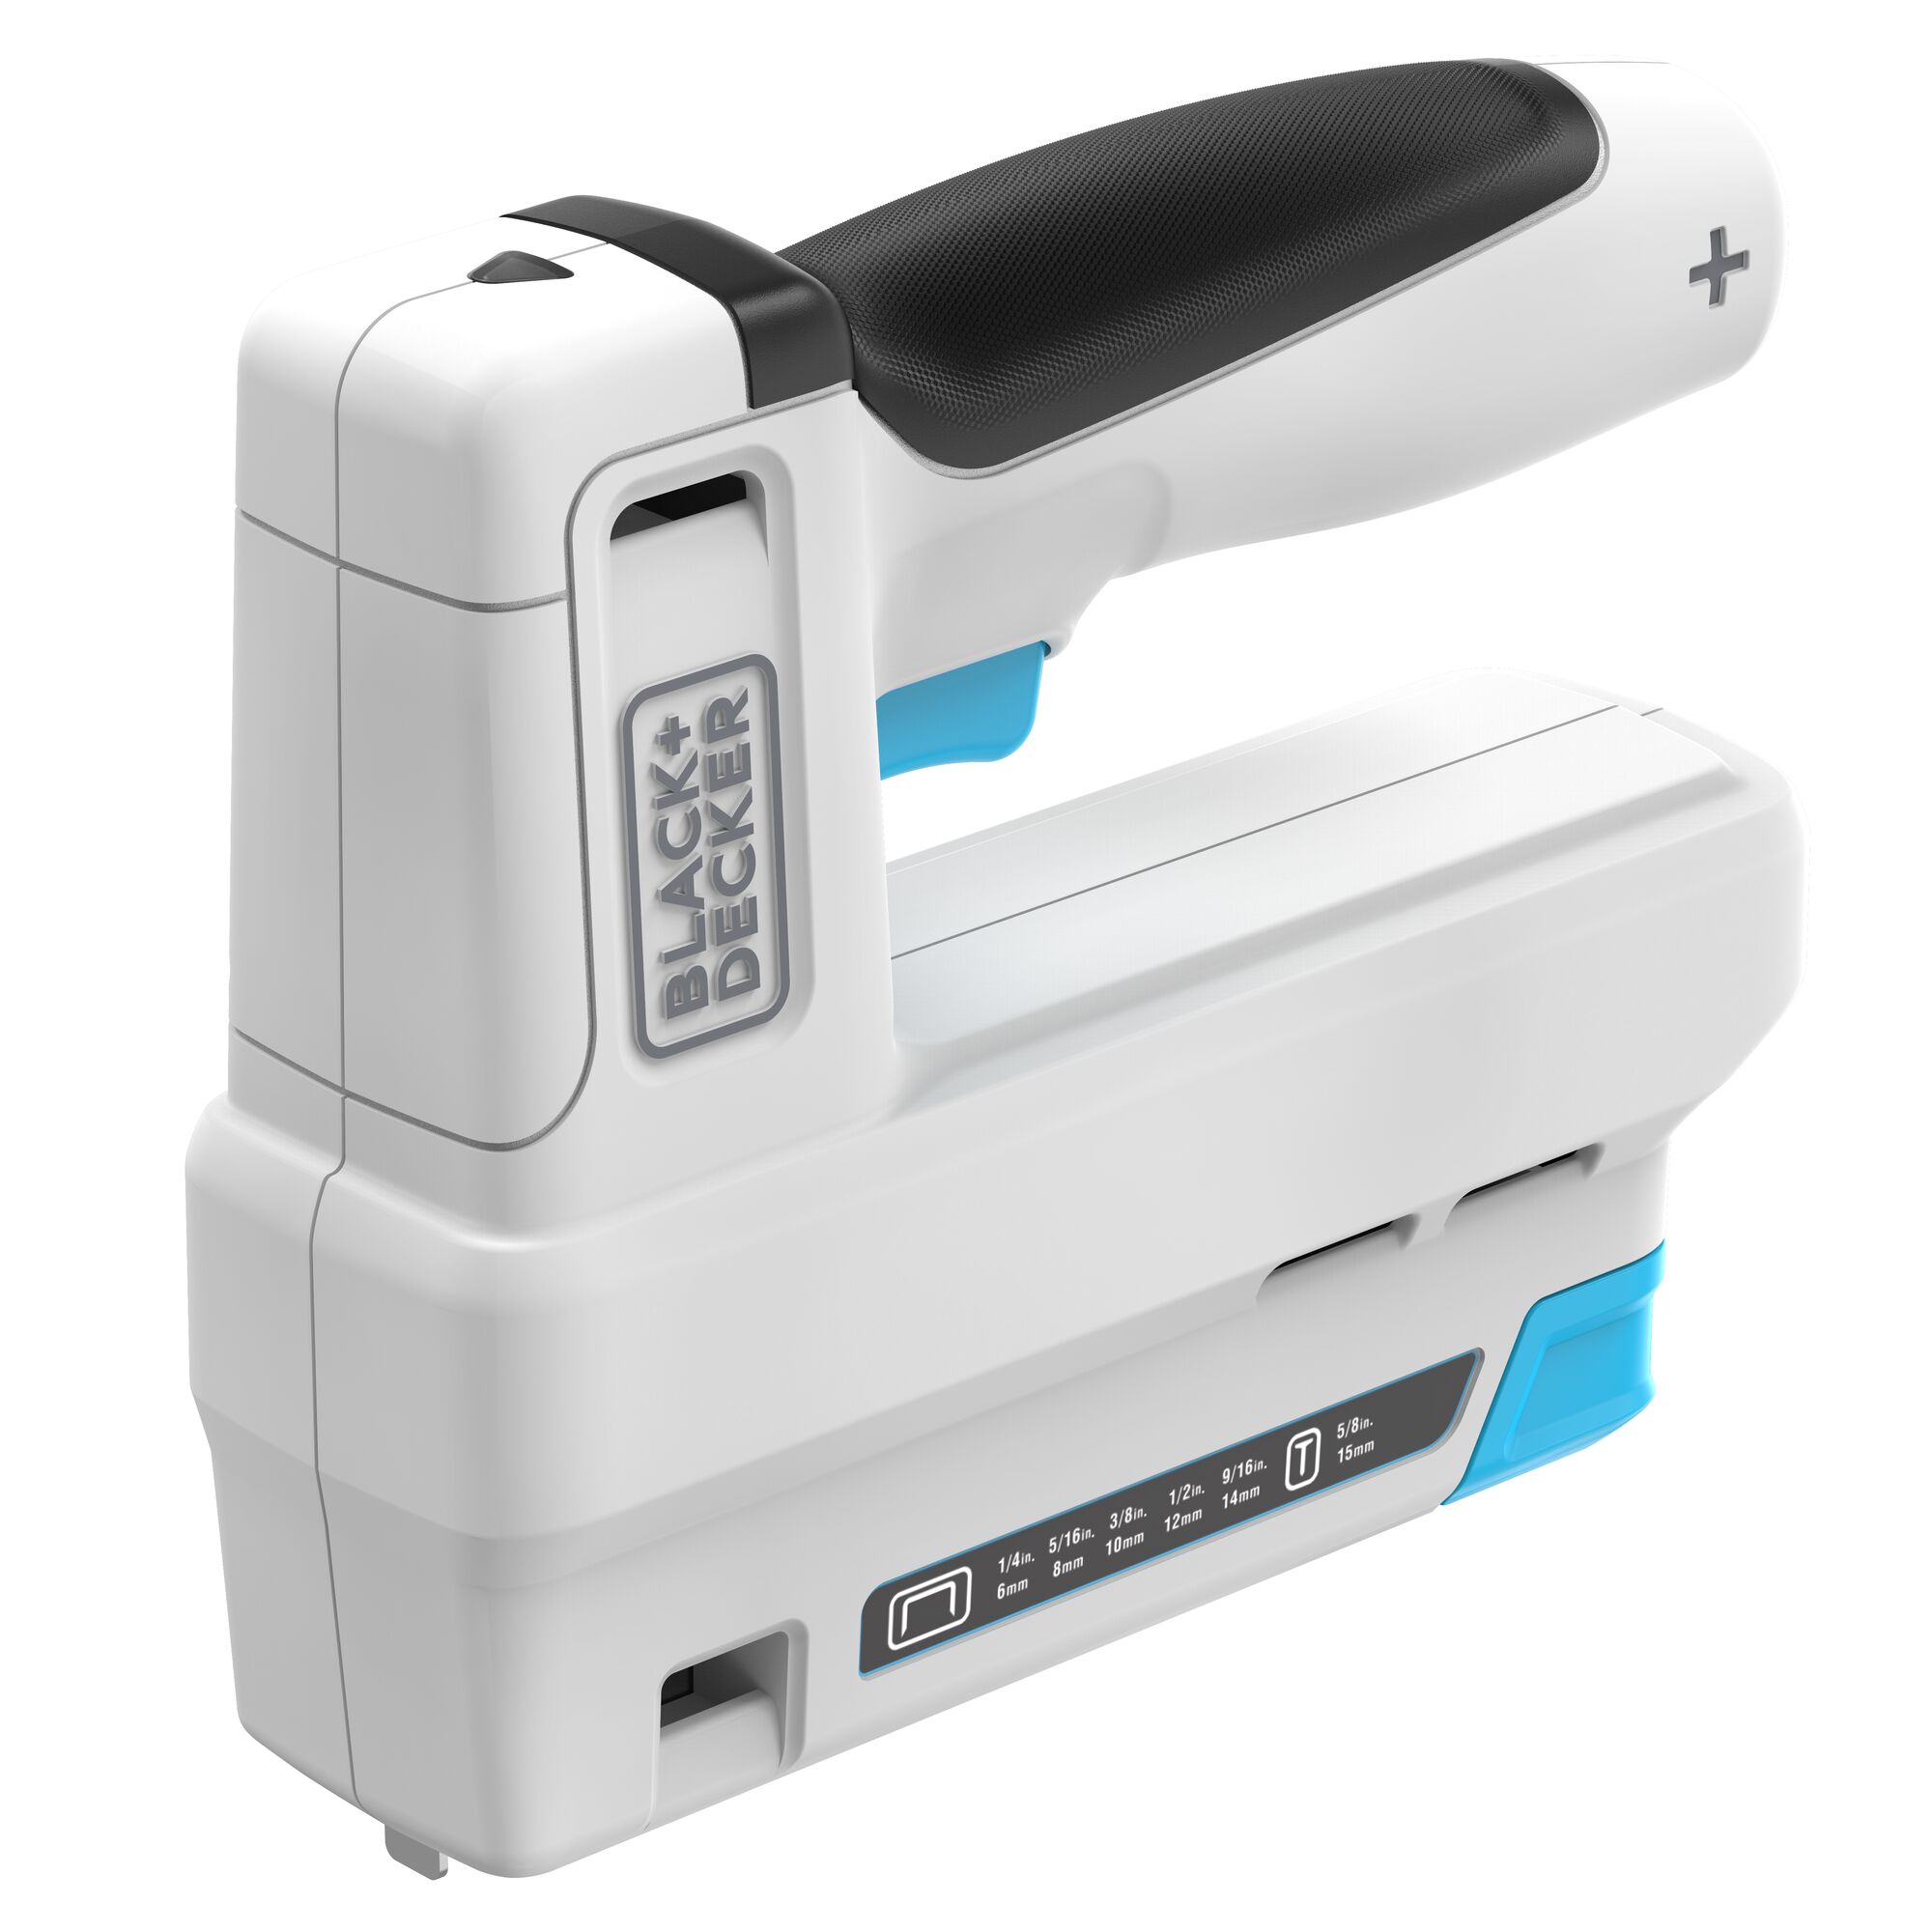 BLACK + DECKER cordless power stapler